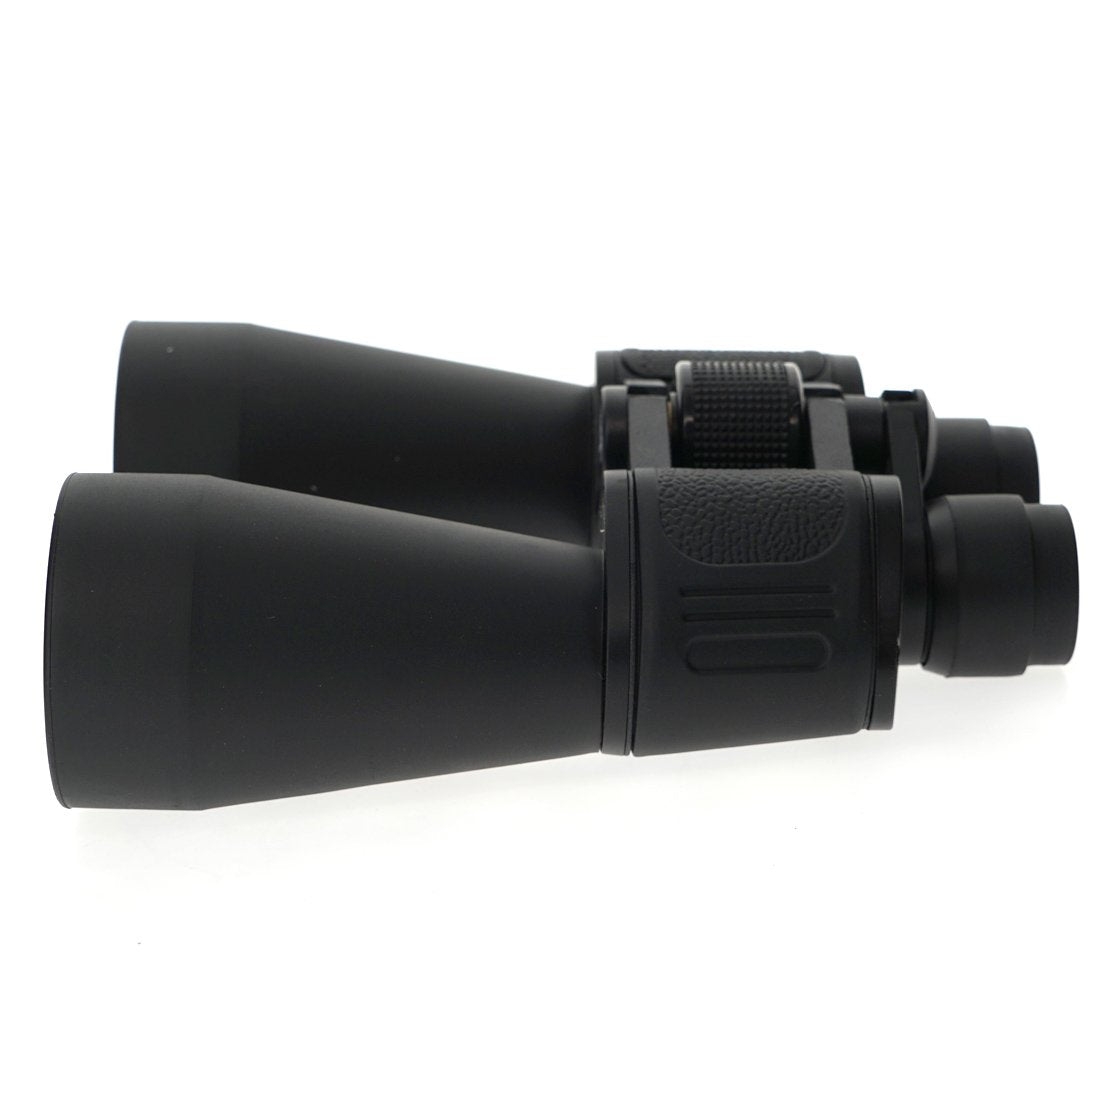 منظار مكبر 60 × 90 - أسود Crony Professional Binocular for Adults